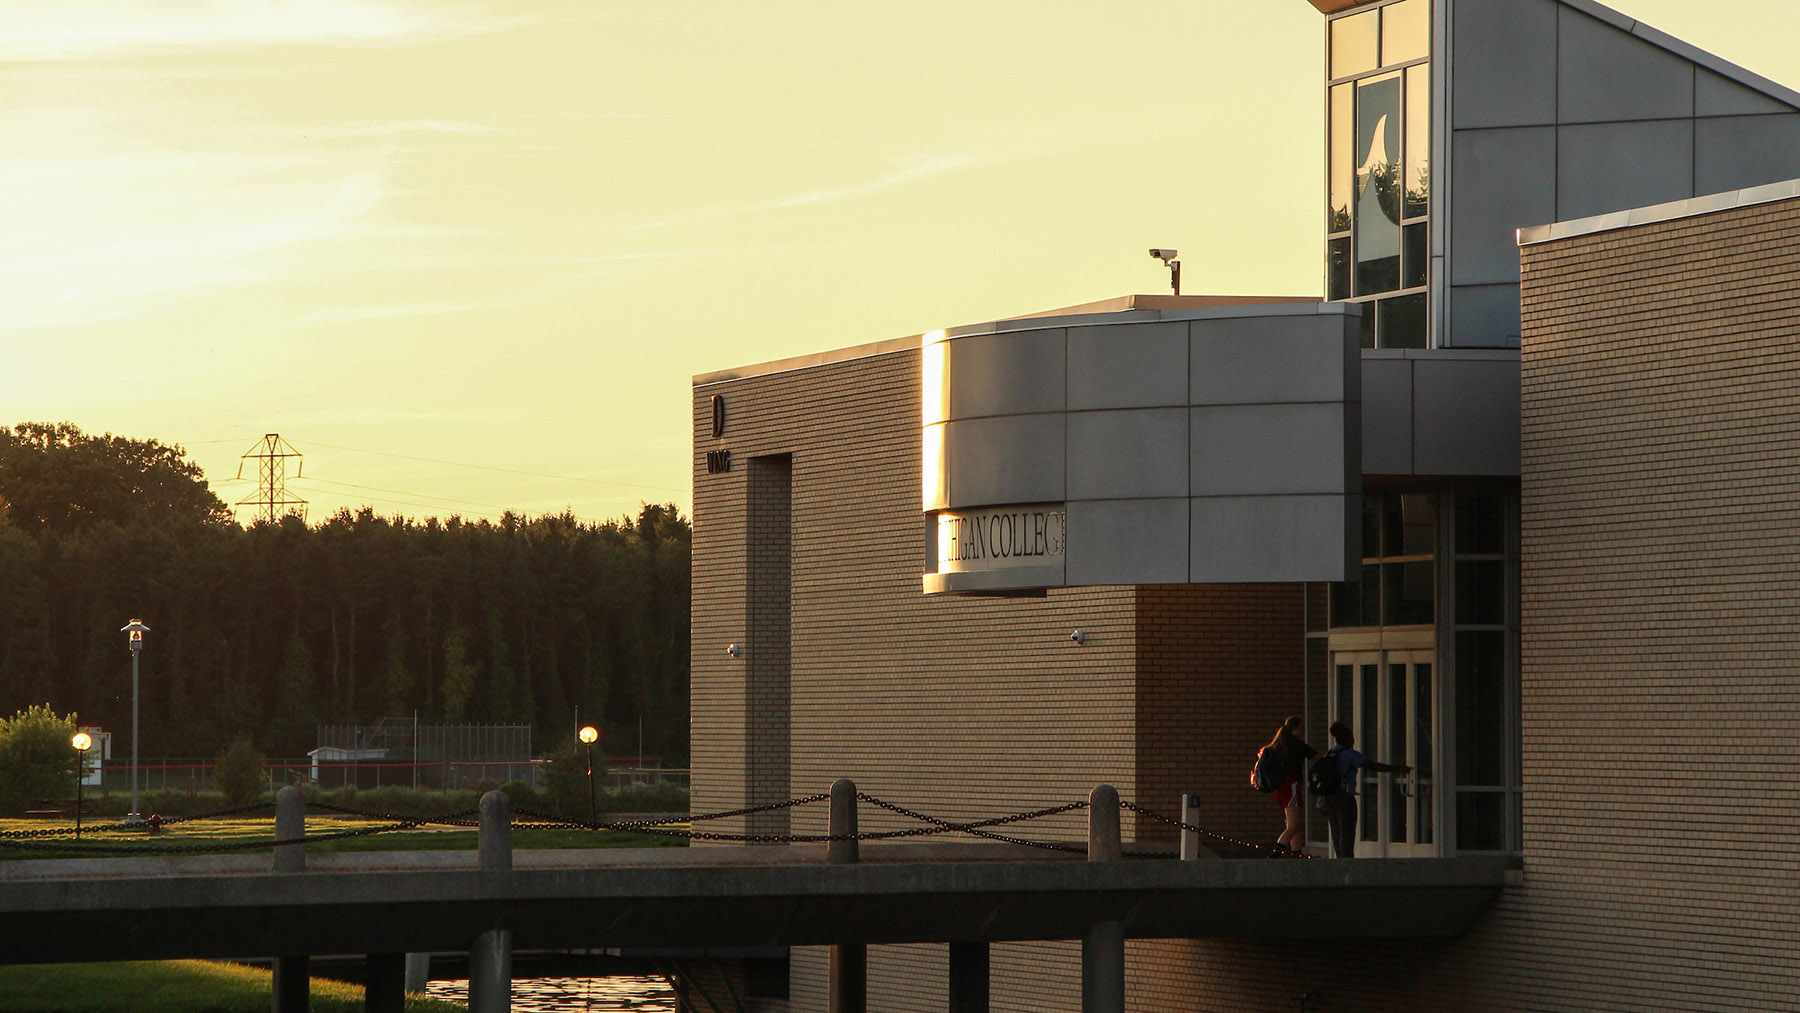 Benton Harbor campus at sunset